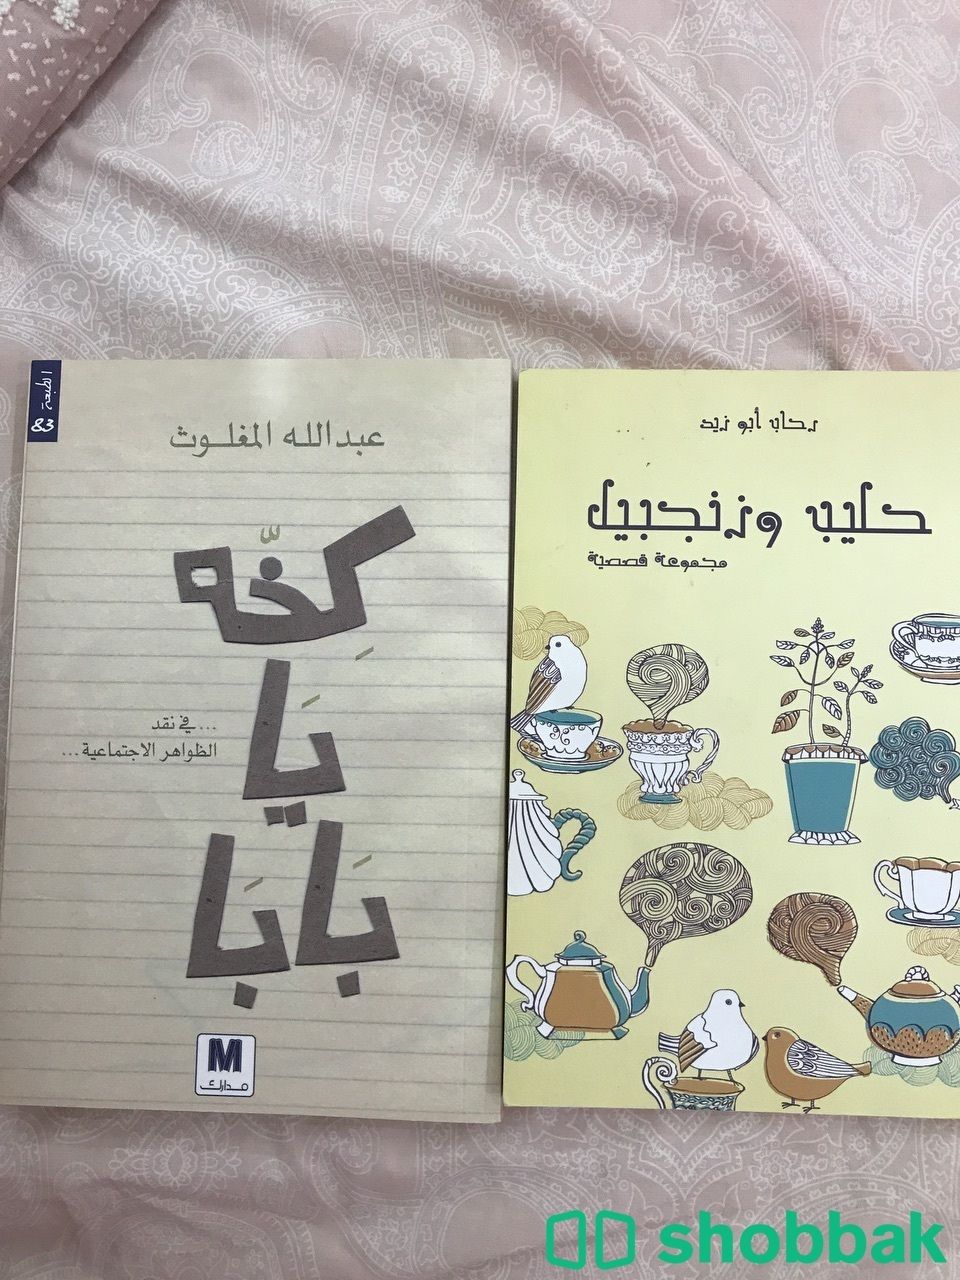 كتاب كخة يا بابا وكتاب حليب وزنجبيل  شباك السعودية